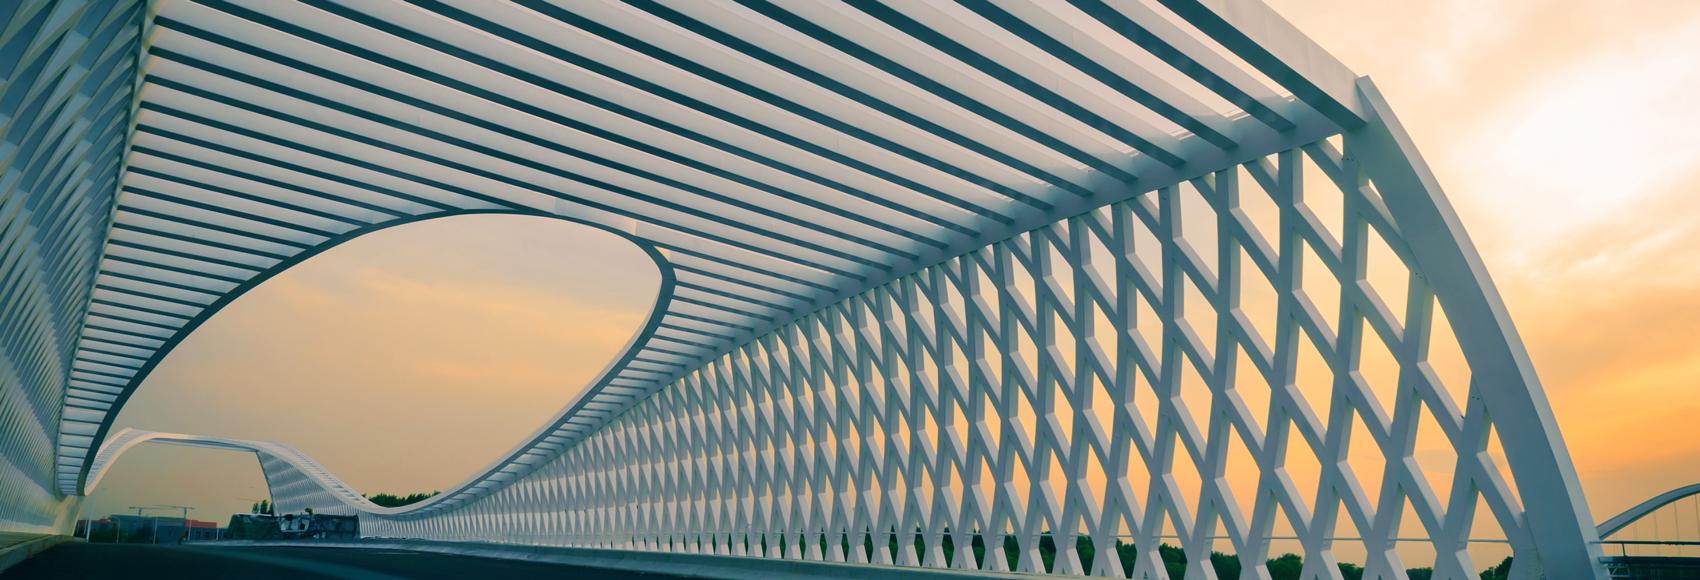 Modern bridge at sunset